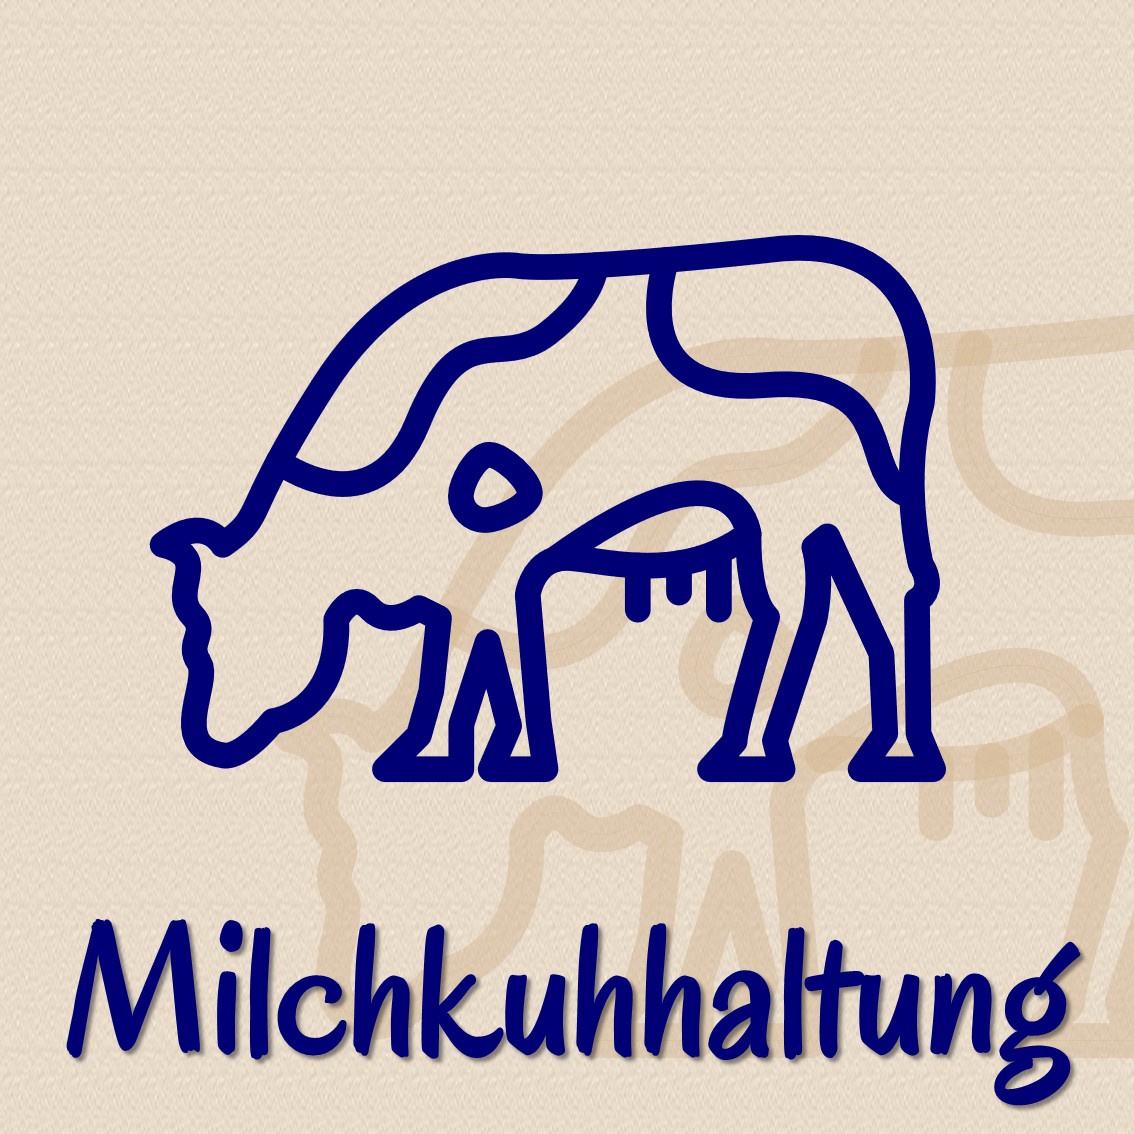 Michkuhhaltung als Geschäftszweig der Methauer AGRO-Agrarprodukte GmbH